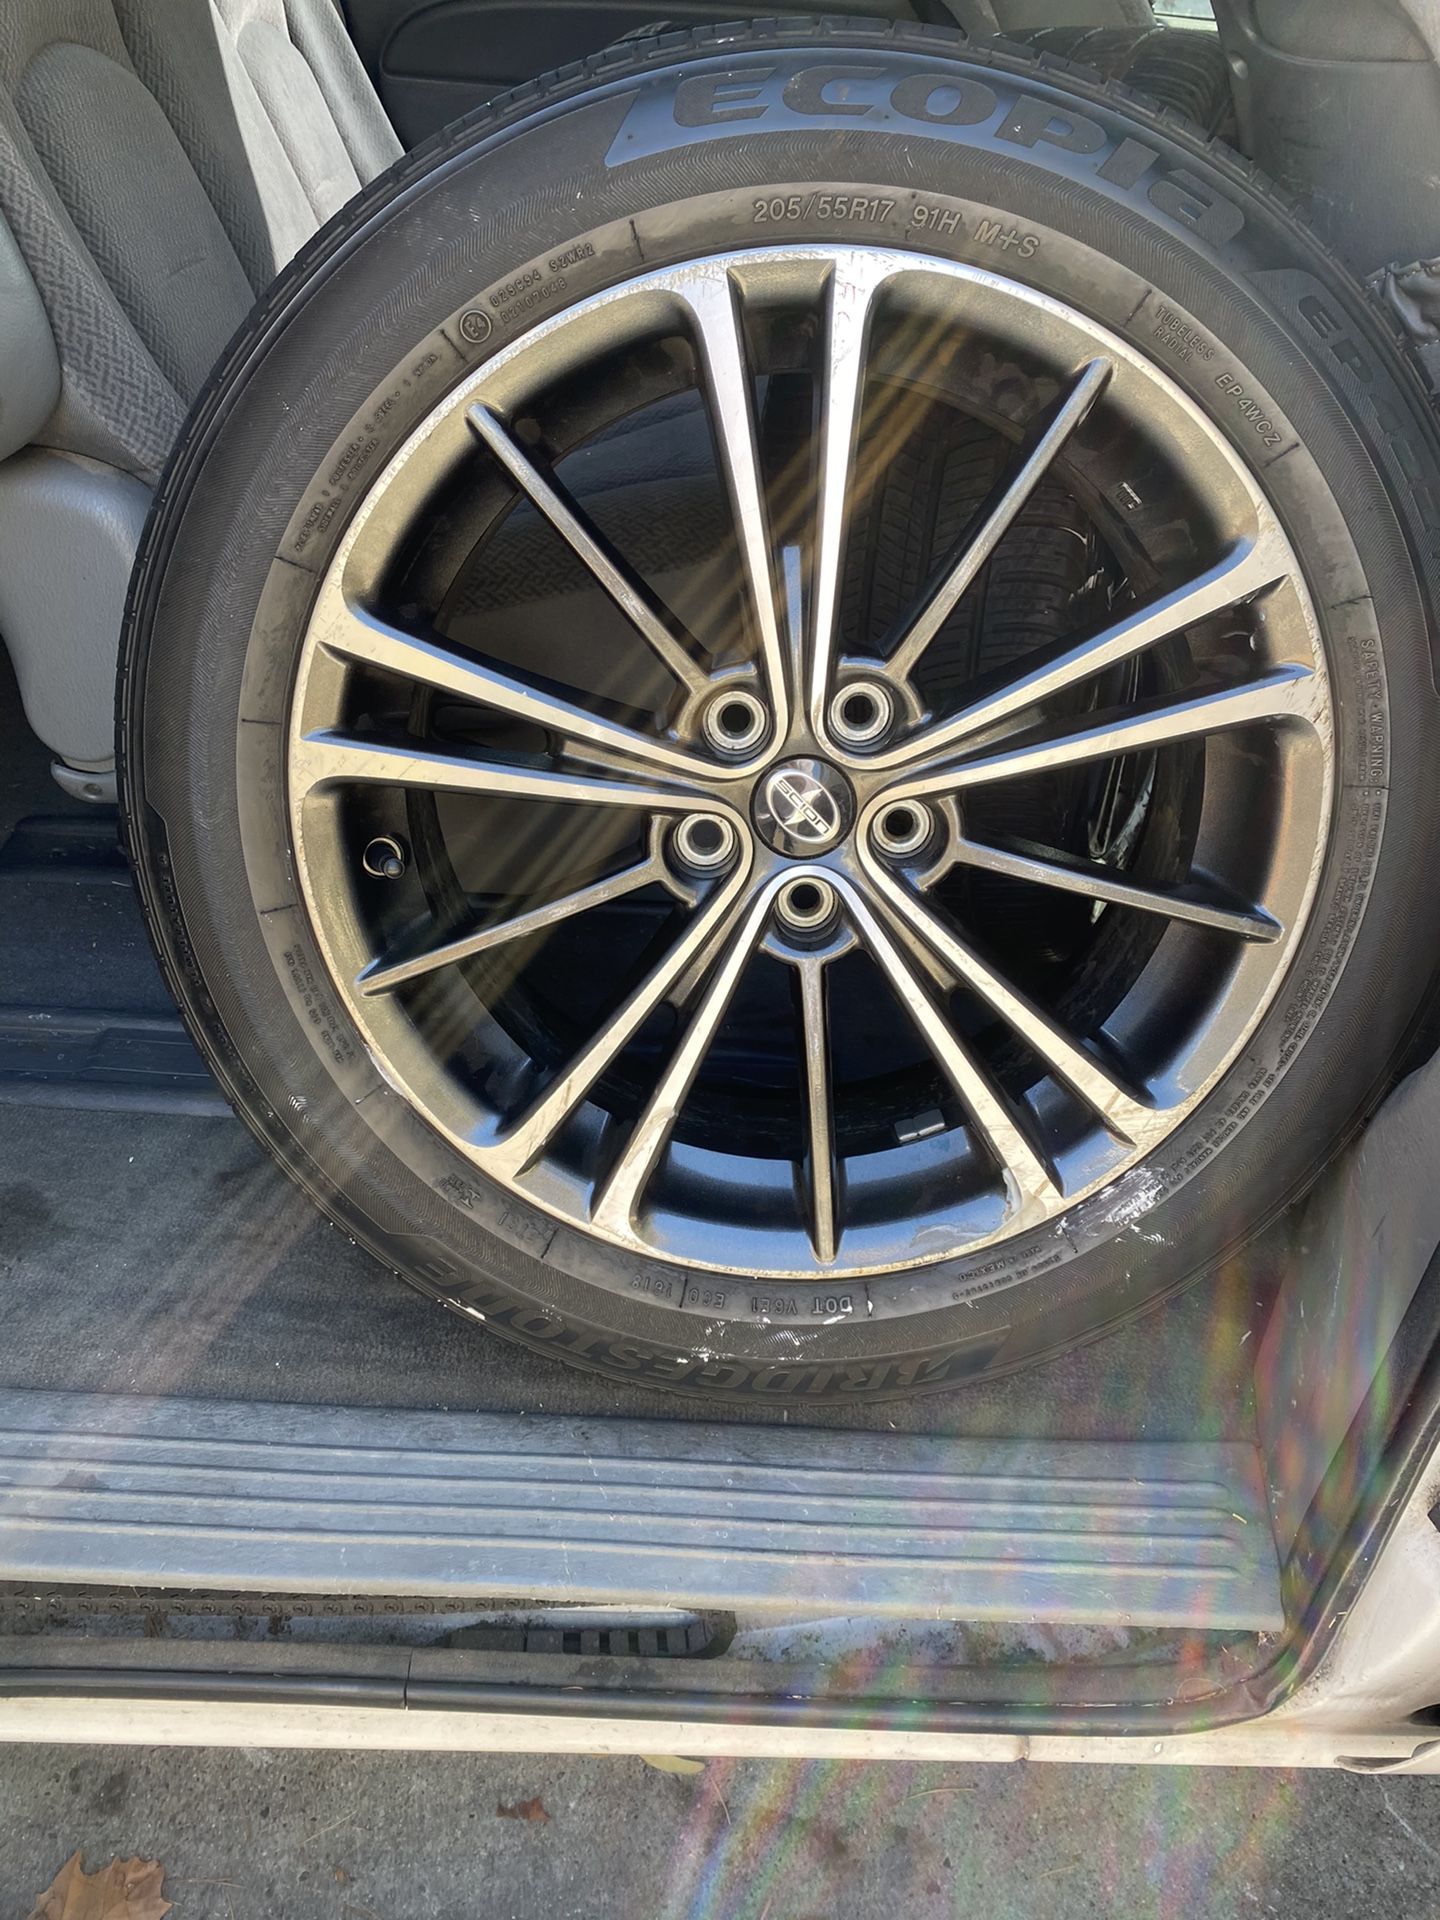 18” Scion Rims Used Tires & New Black Lug Nuts